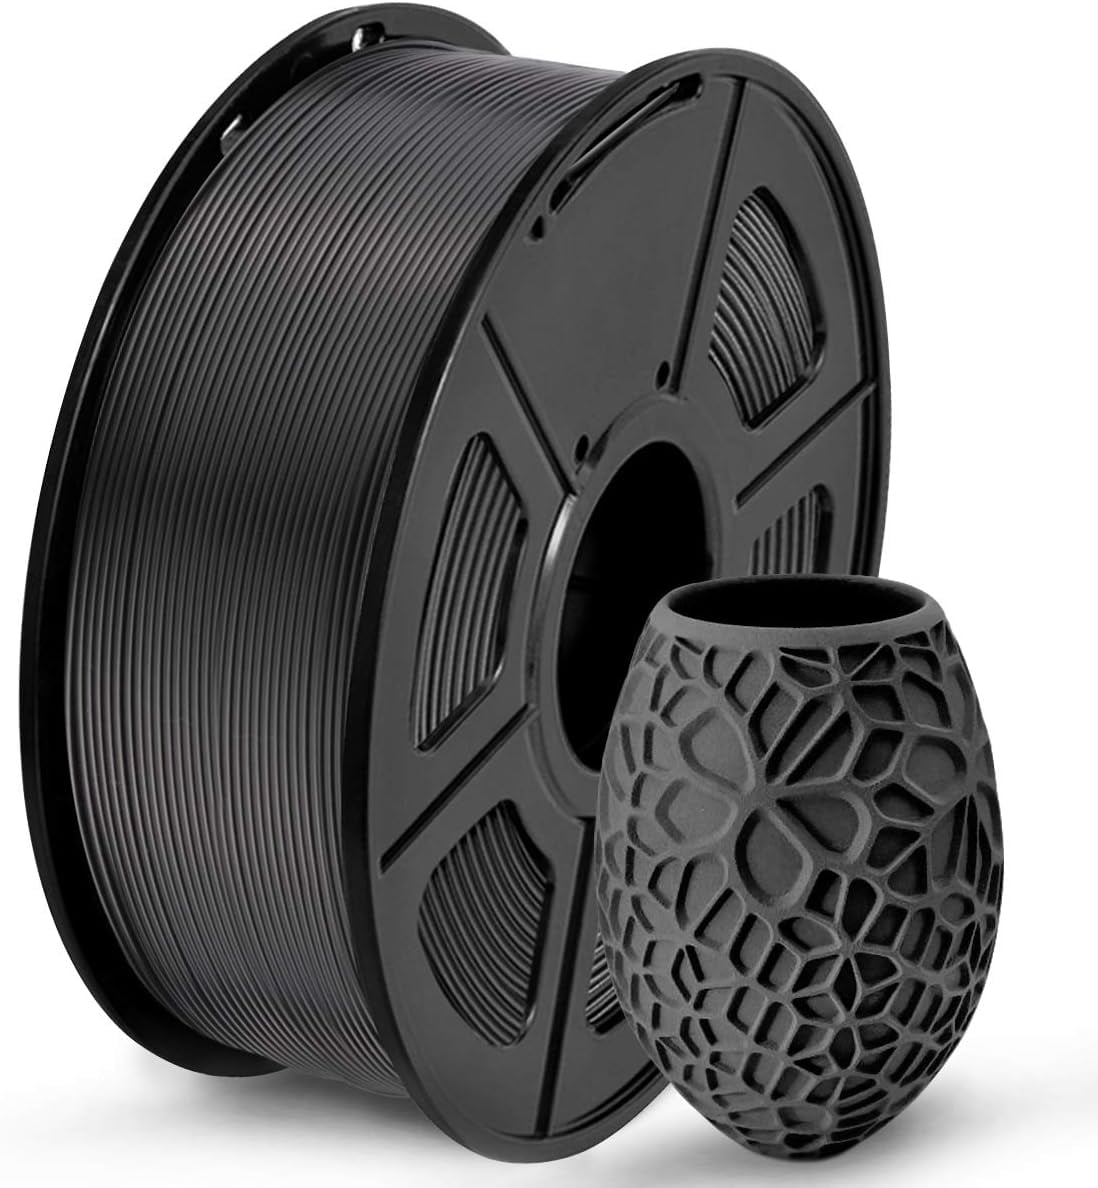 Black PETG Filament 1.75 mm 1KG 3D Printing Filament 2.2lbs Spool 3D  Printer Material Fit Most FDM Printer Easy to Print CC3D Black Color